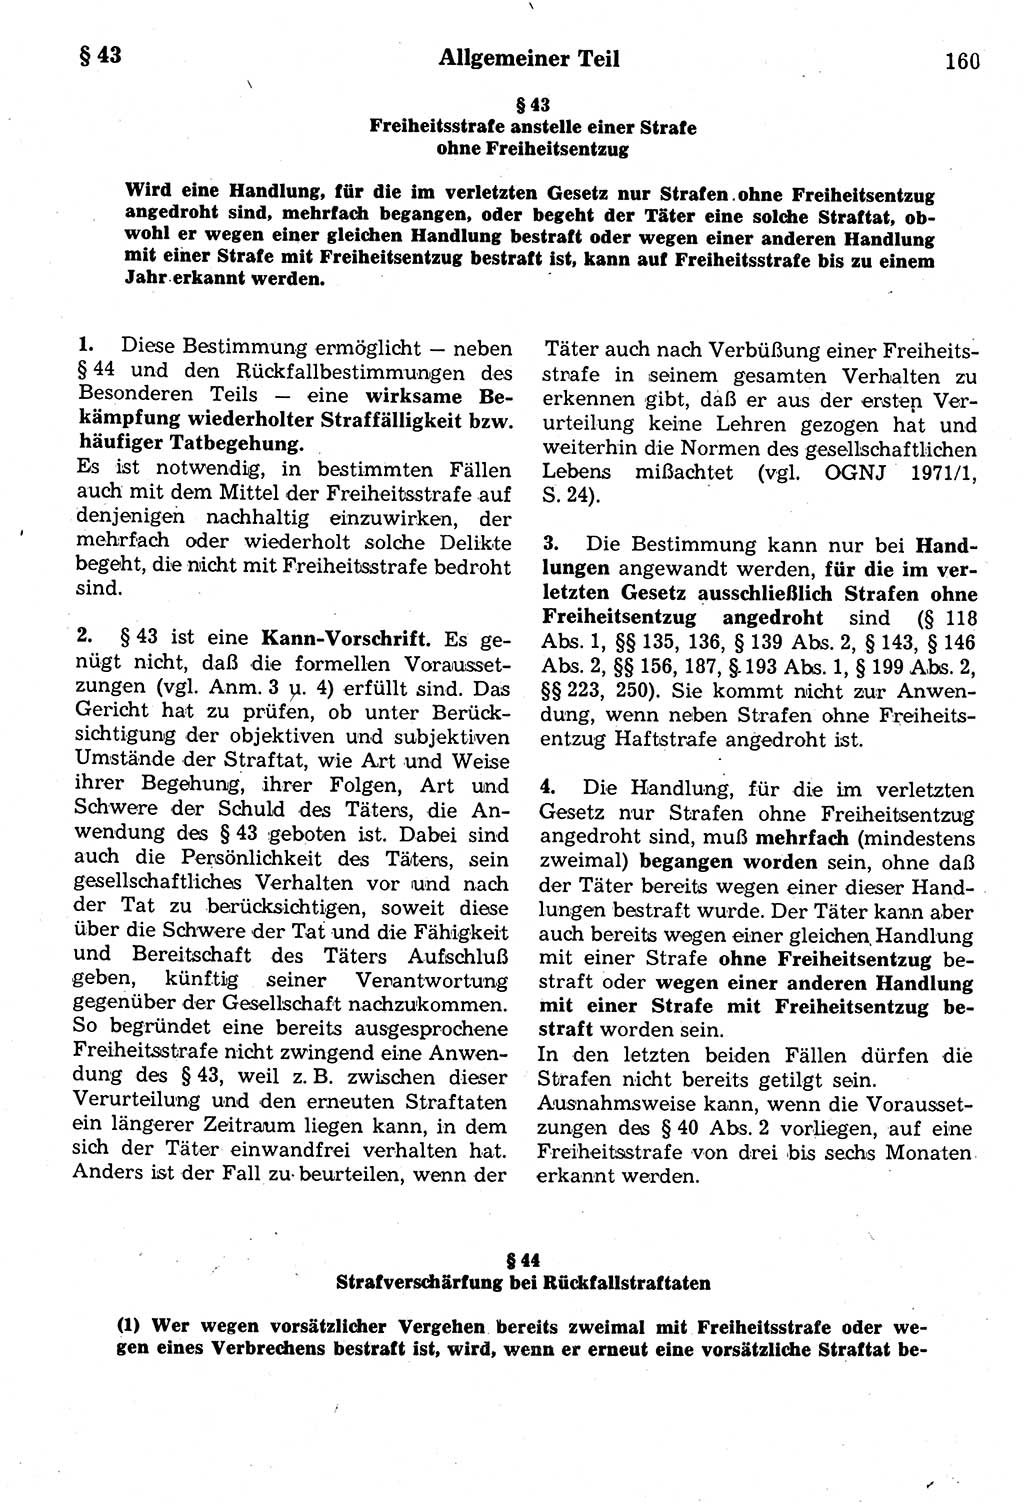 Strafrecht der Deutschen Demokratischen Republik (DDR), Kommentar zum Strafgesetzbuch (StGB) 1987, Seite 160 (Strafr. DDR Komm. StGB 1987, S. 160)